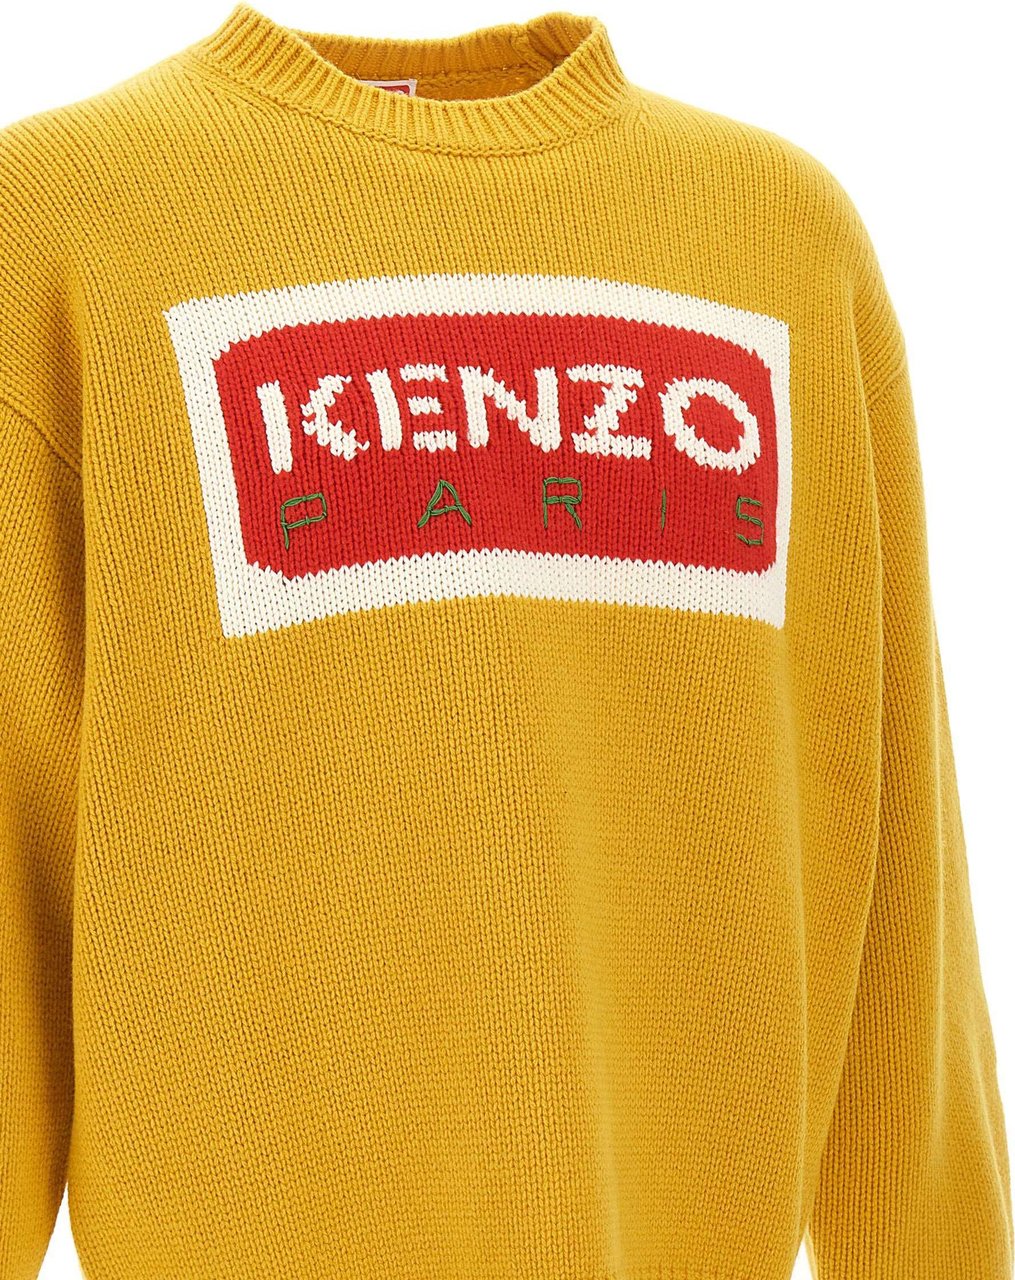 Kenzo Tricolor Knitwear Geel